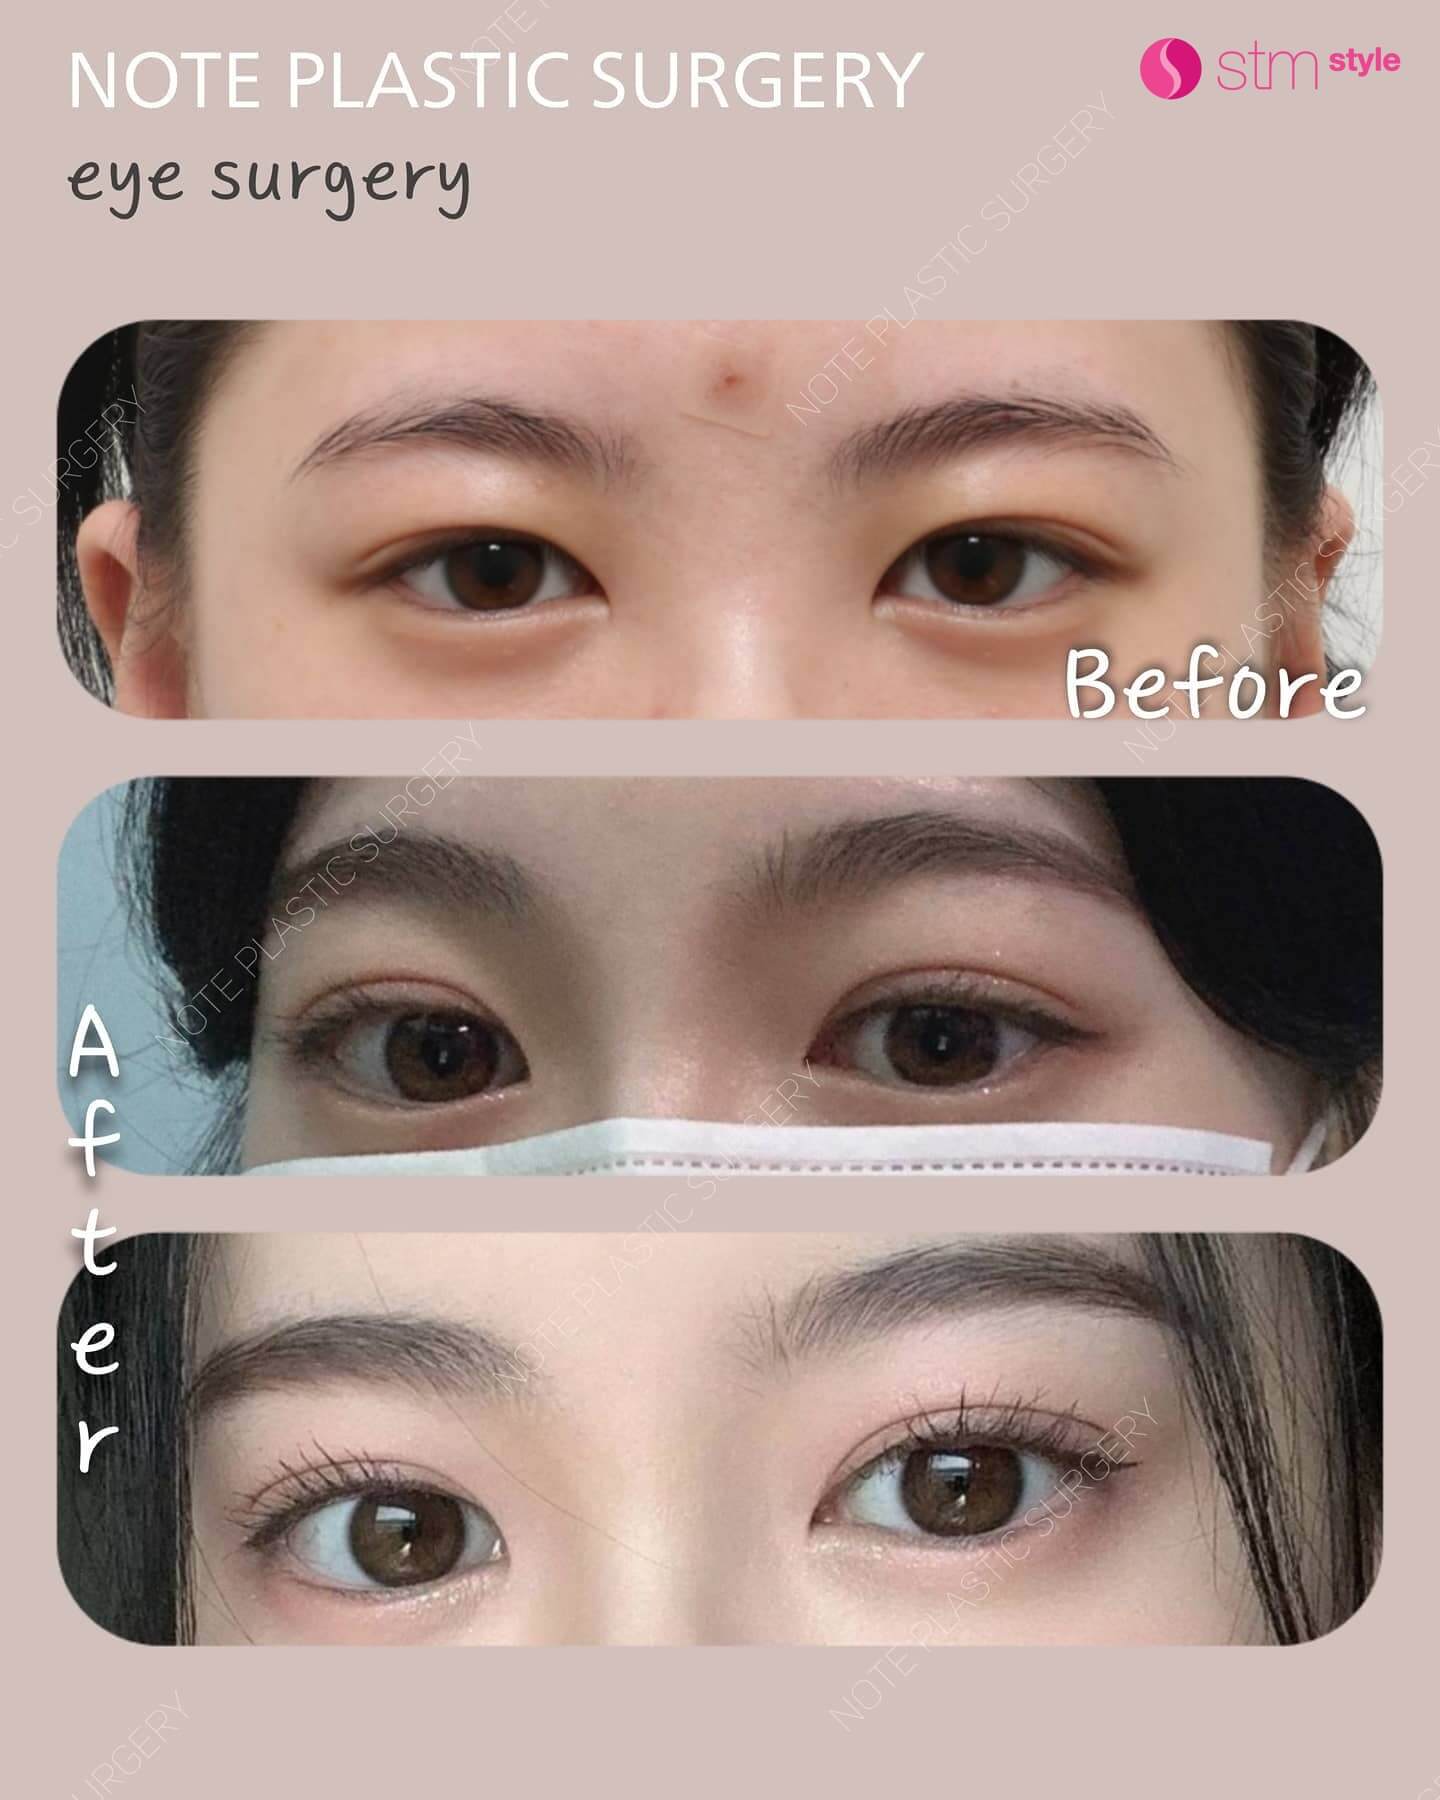 กรีดชั้นตาเปิดหางตาบนและล่าง รีวิวศัลยกรรมตาเกาหลี โรงพยาบาลศัลยกรรมเกาหลี STMstyle โรงพยาบาลบาลNOTE มัดกล้ามเนื้อตา ศัลยกรรมตาสองชั้น